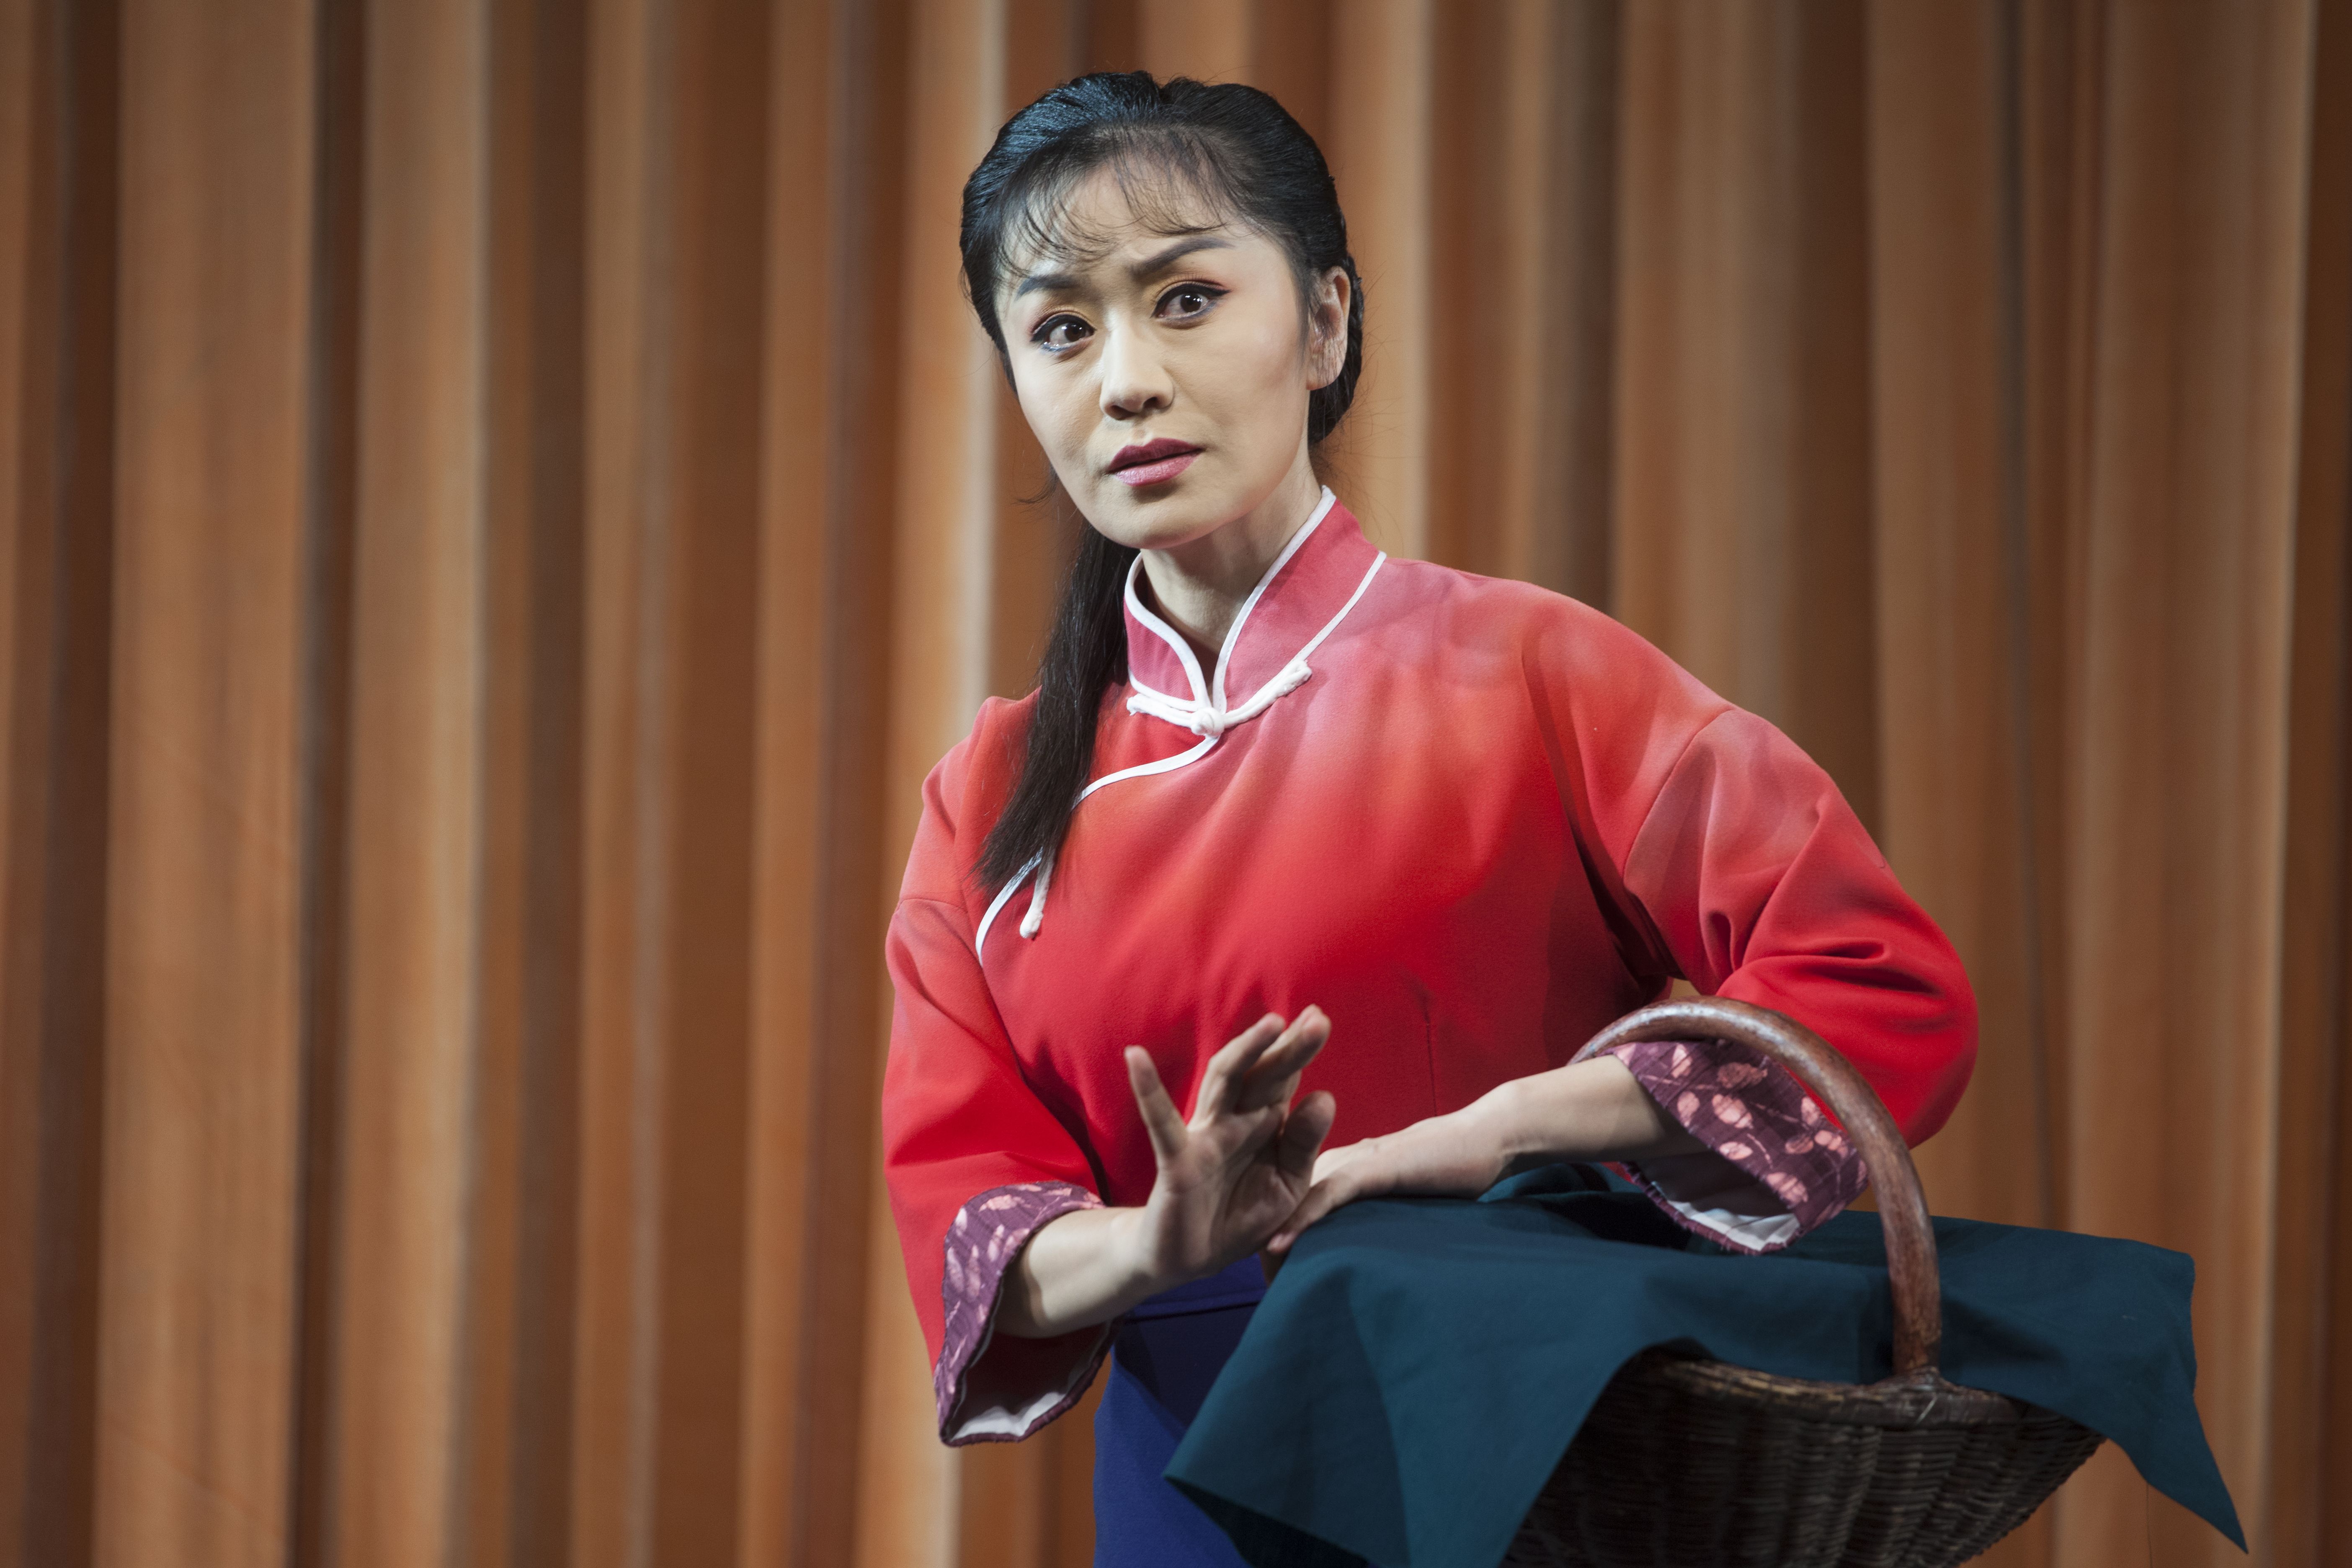 该剧由河南豫剧院三团优秀青年演员刘雯卉领衔主演,著名豫剧表演艺术